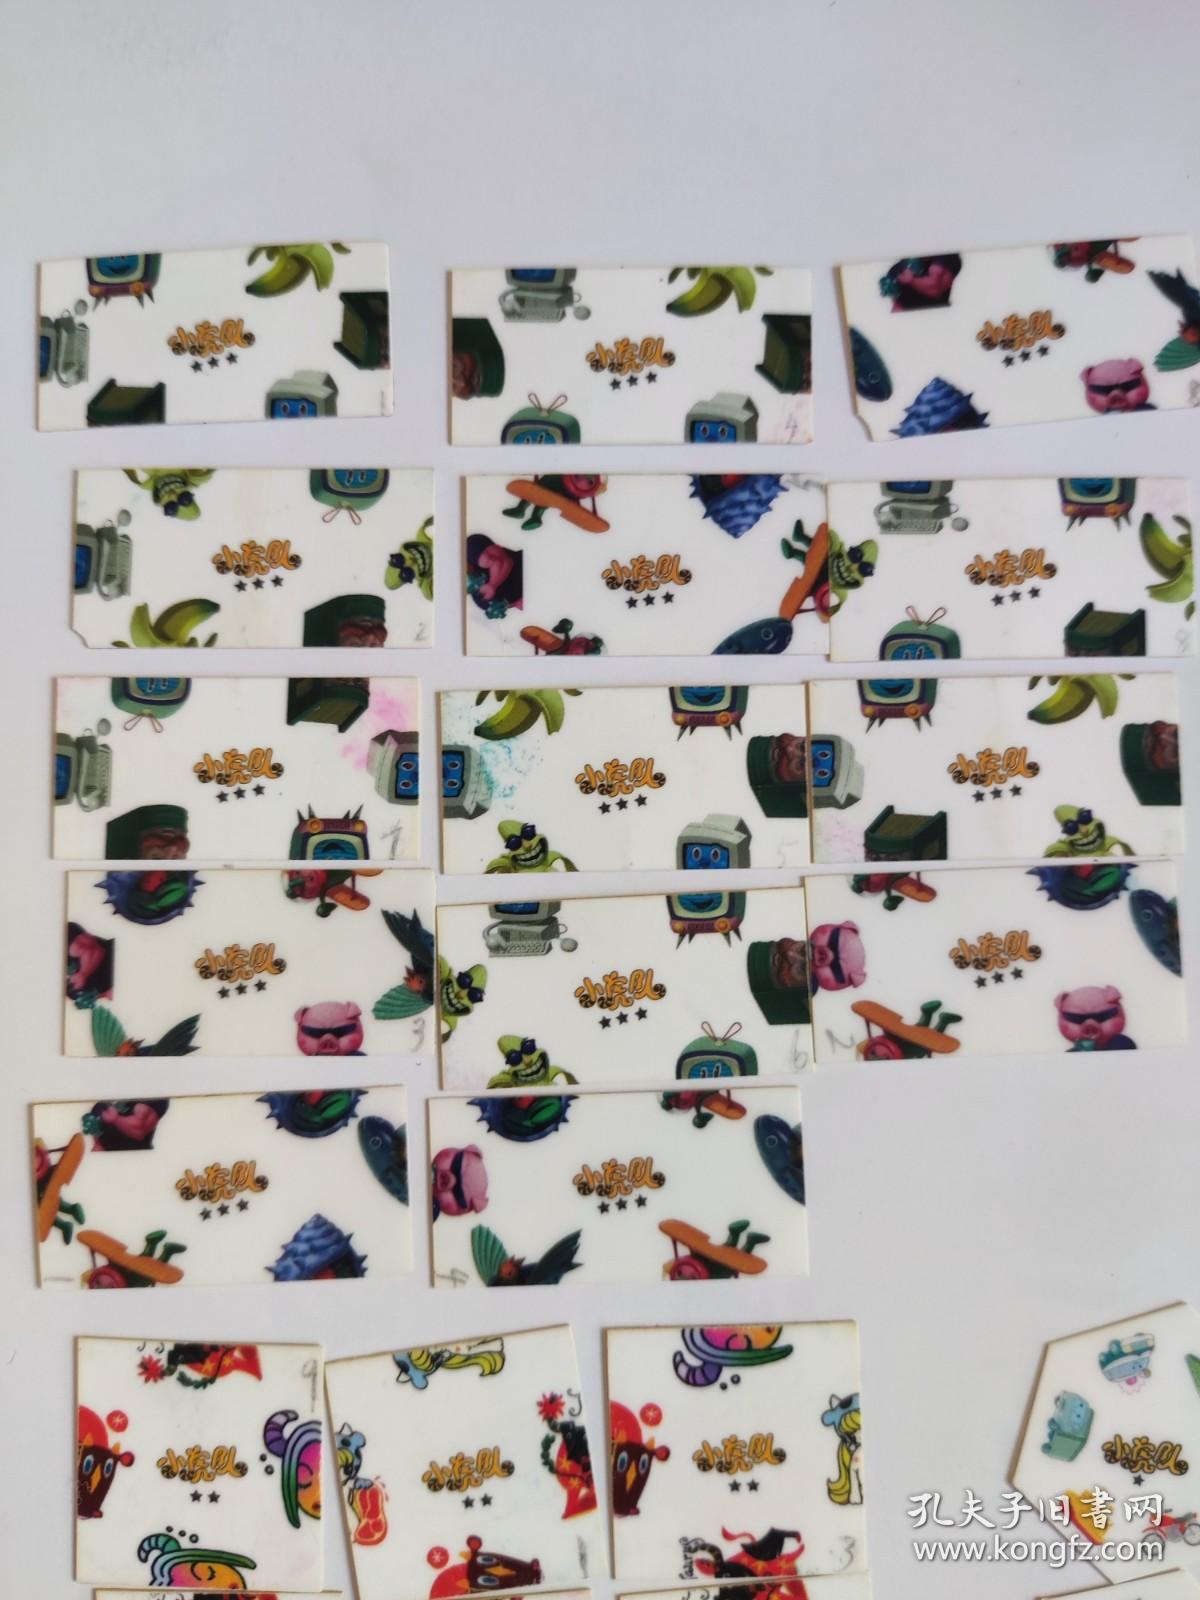 小虎队 九宫格拼图卡 拼图卡，食品卡，90年代 卡片收藏